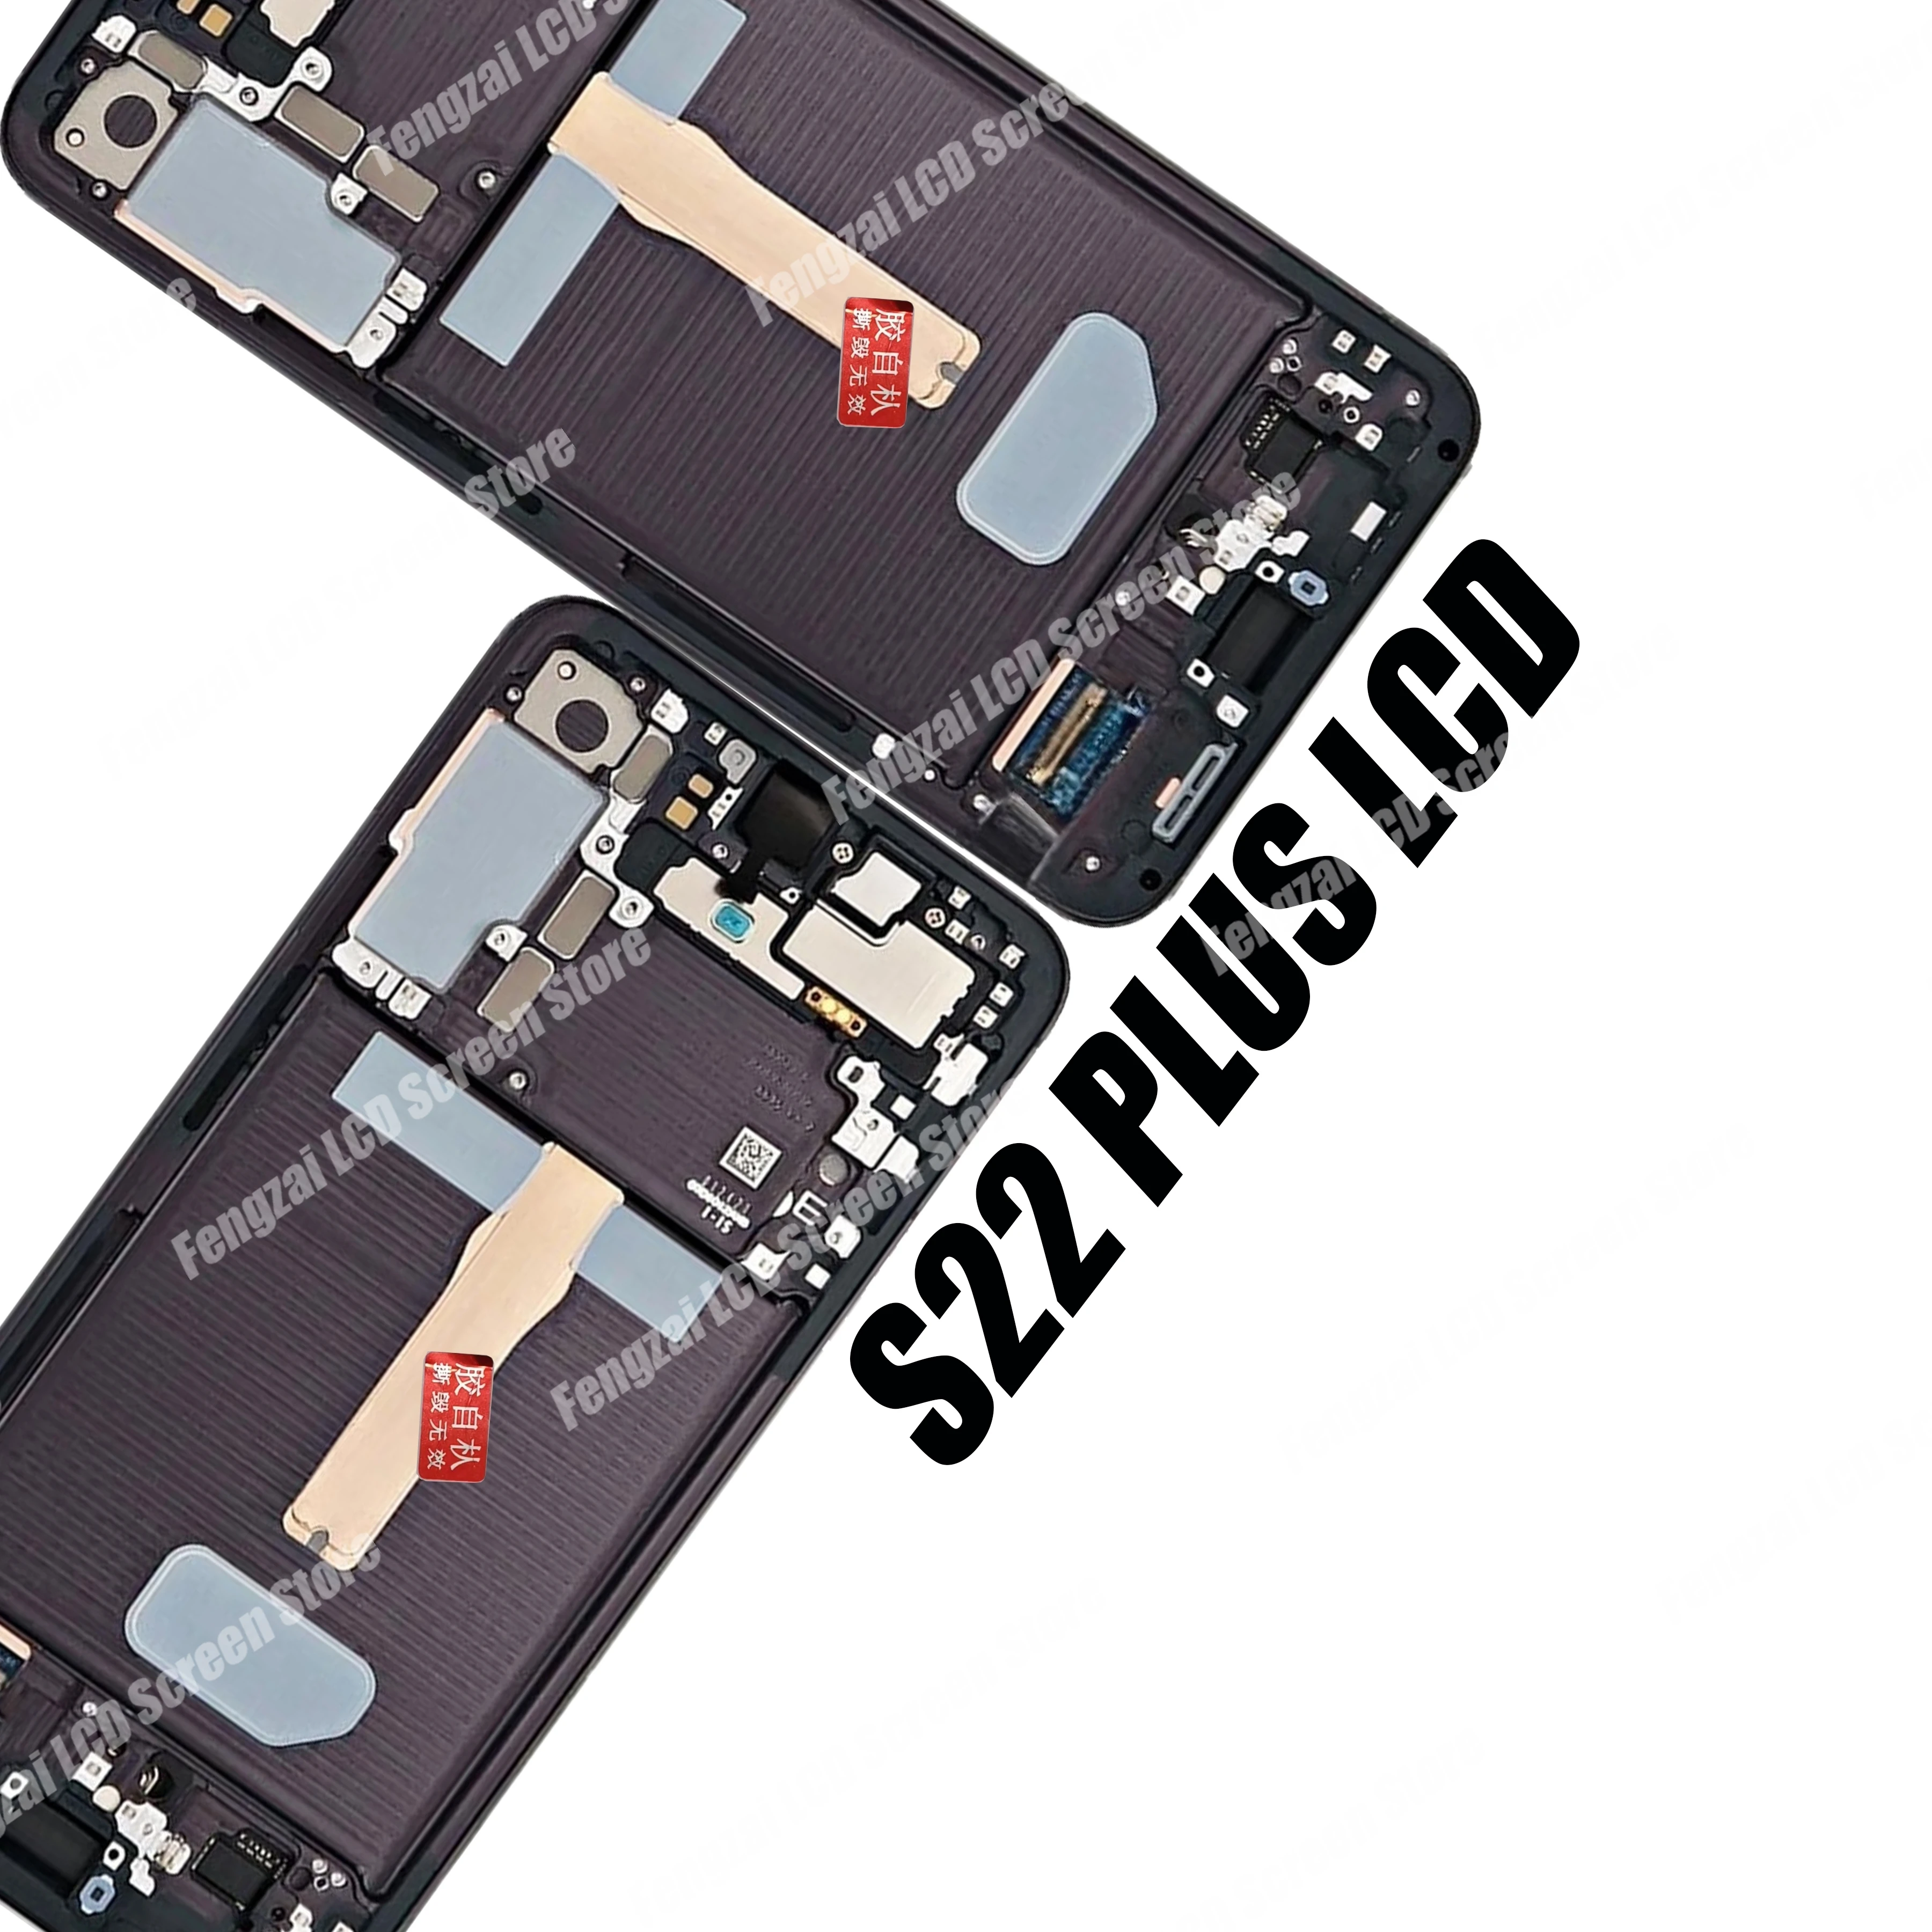 Оригинальный Super Amoled Для Samsung Galaxy S22 Plus LCD S906B S906B/DS Дисплей С Сенсорным Экраном Digitizer Для S22 + С Задней крышкой